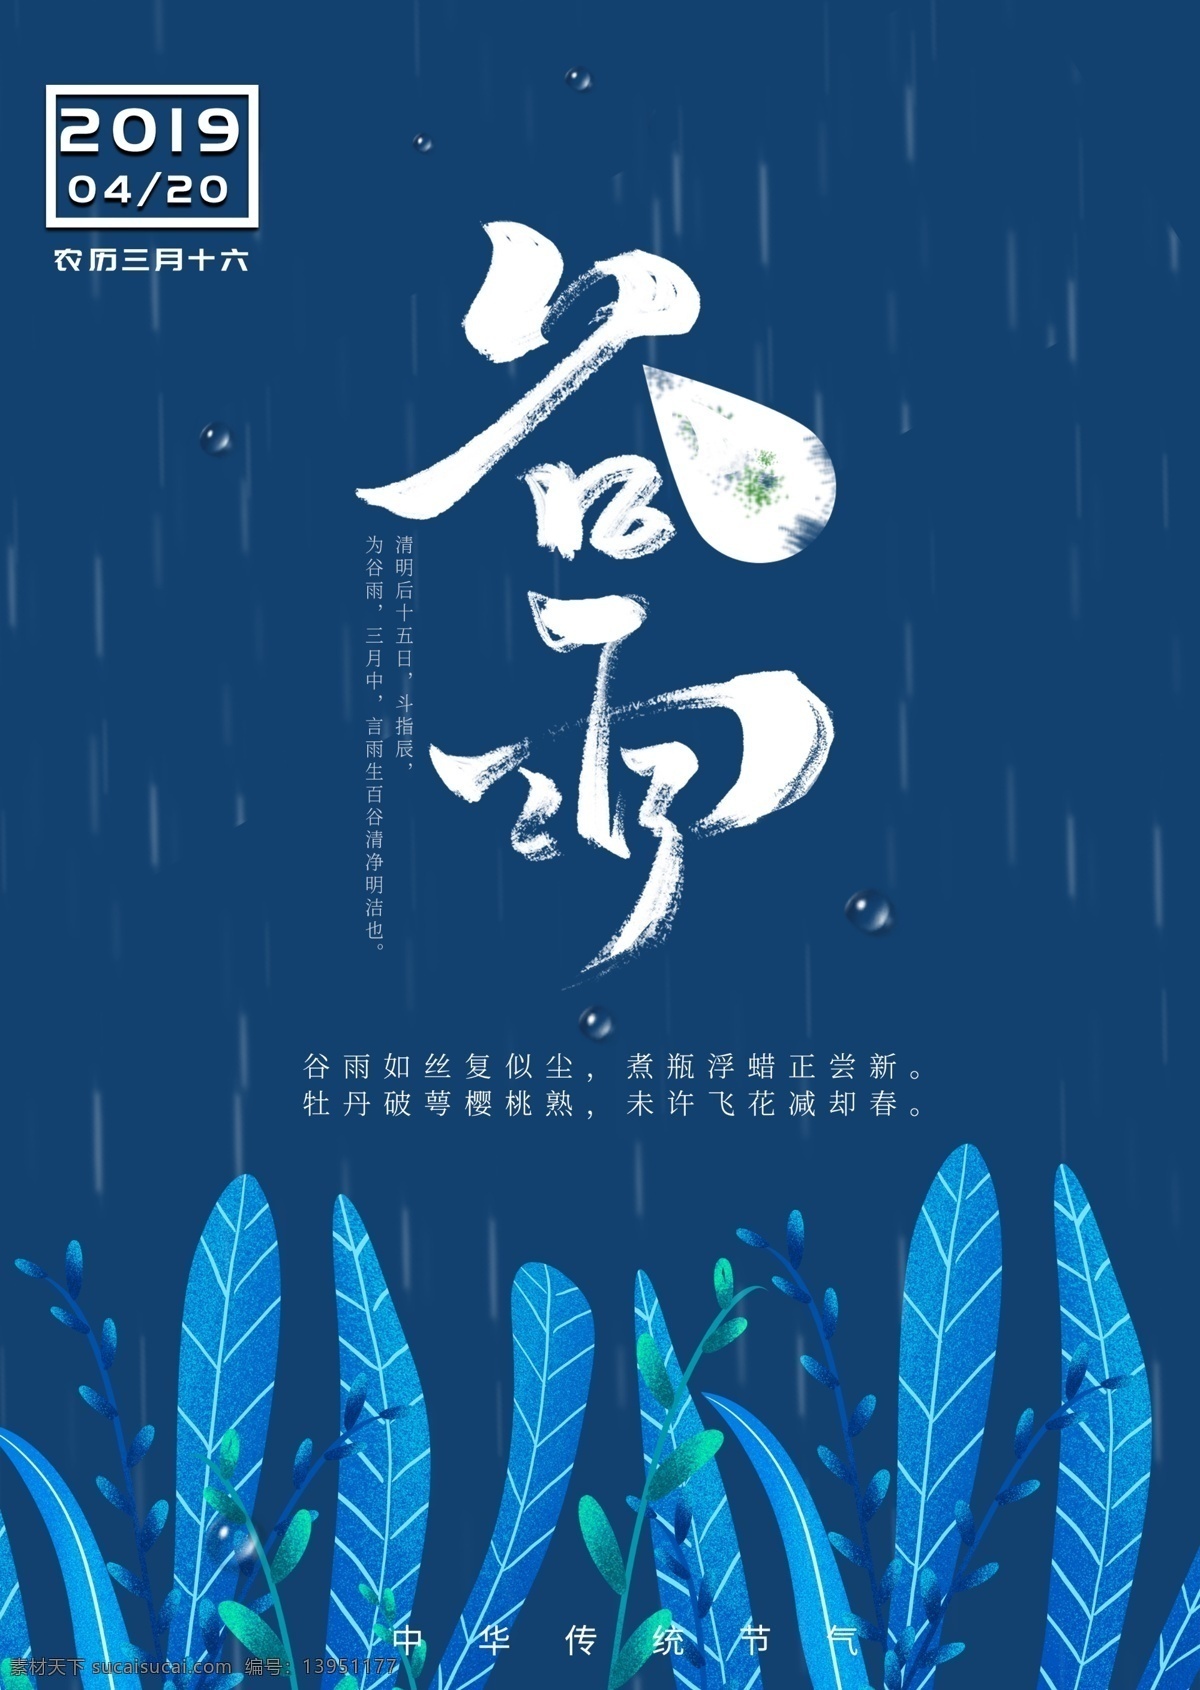 谷雨 宣传海报 节气 春 书法字 安静 冷静 传统节日 民俗